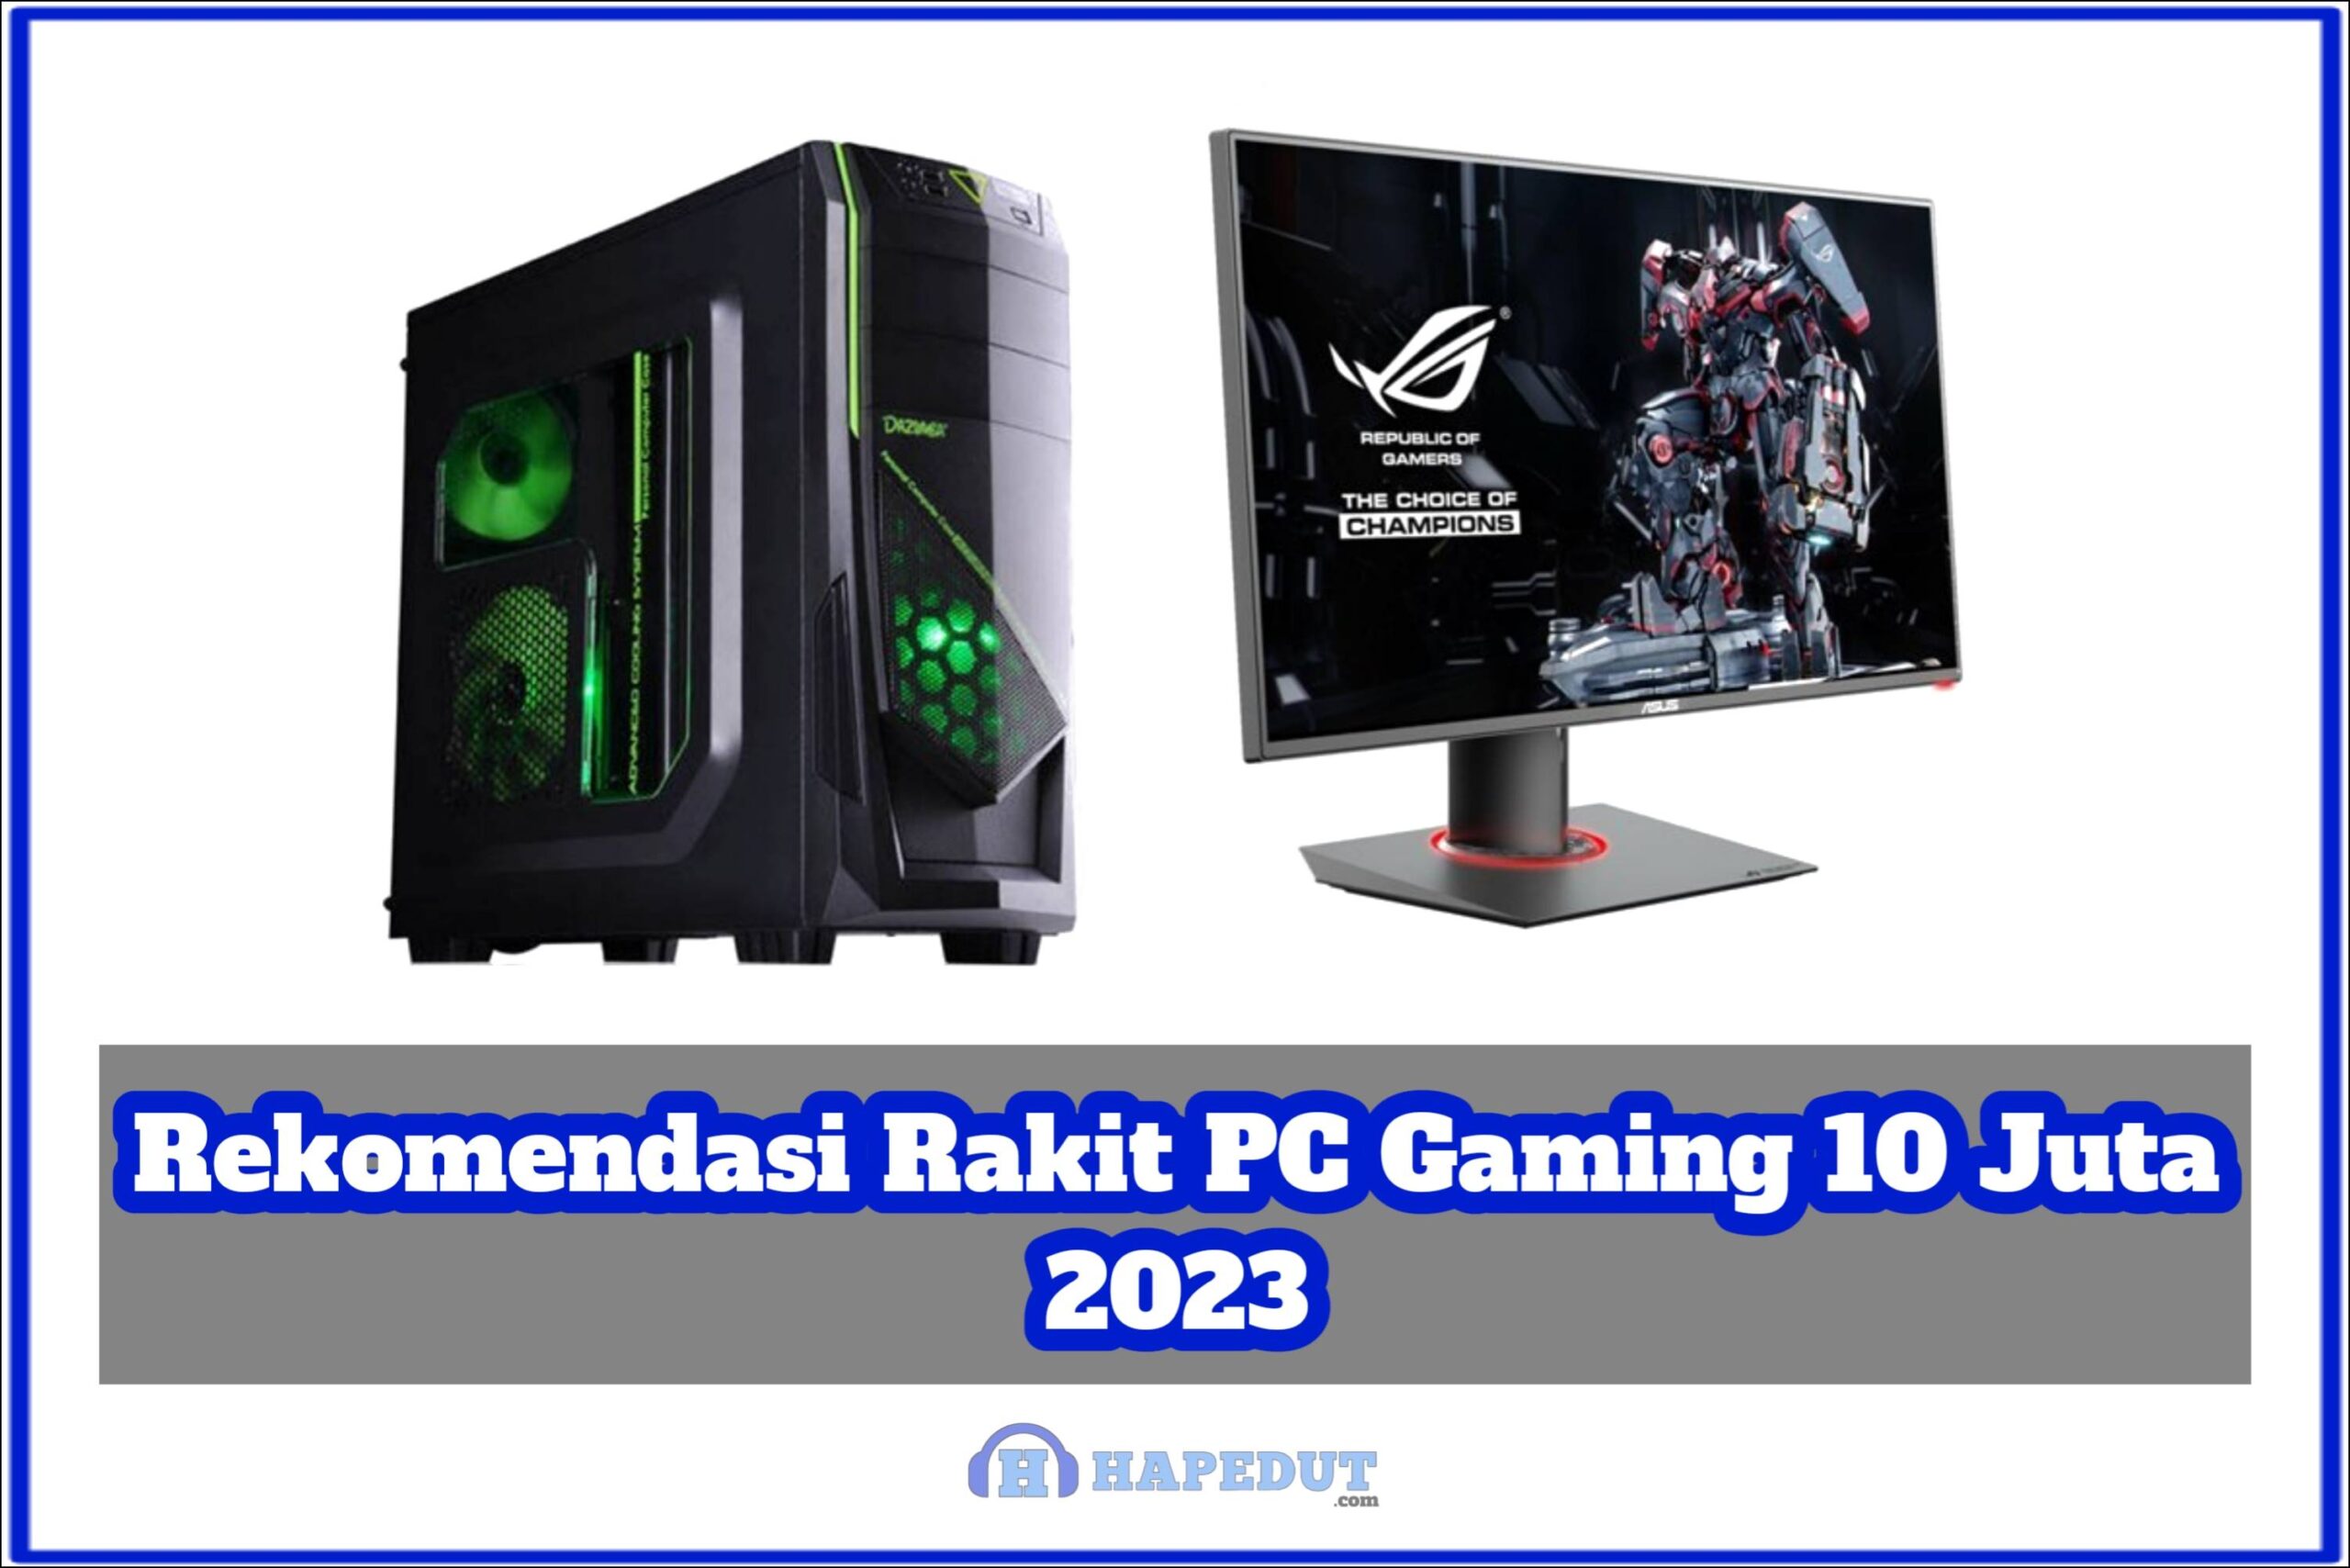 Rekomendasi Rakit PC Gaming Murah 1 Jutaan 2023